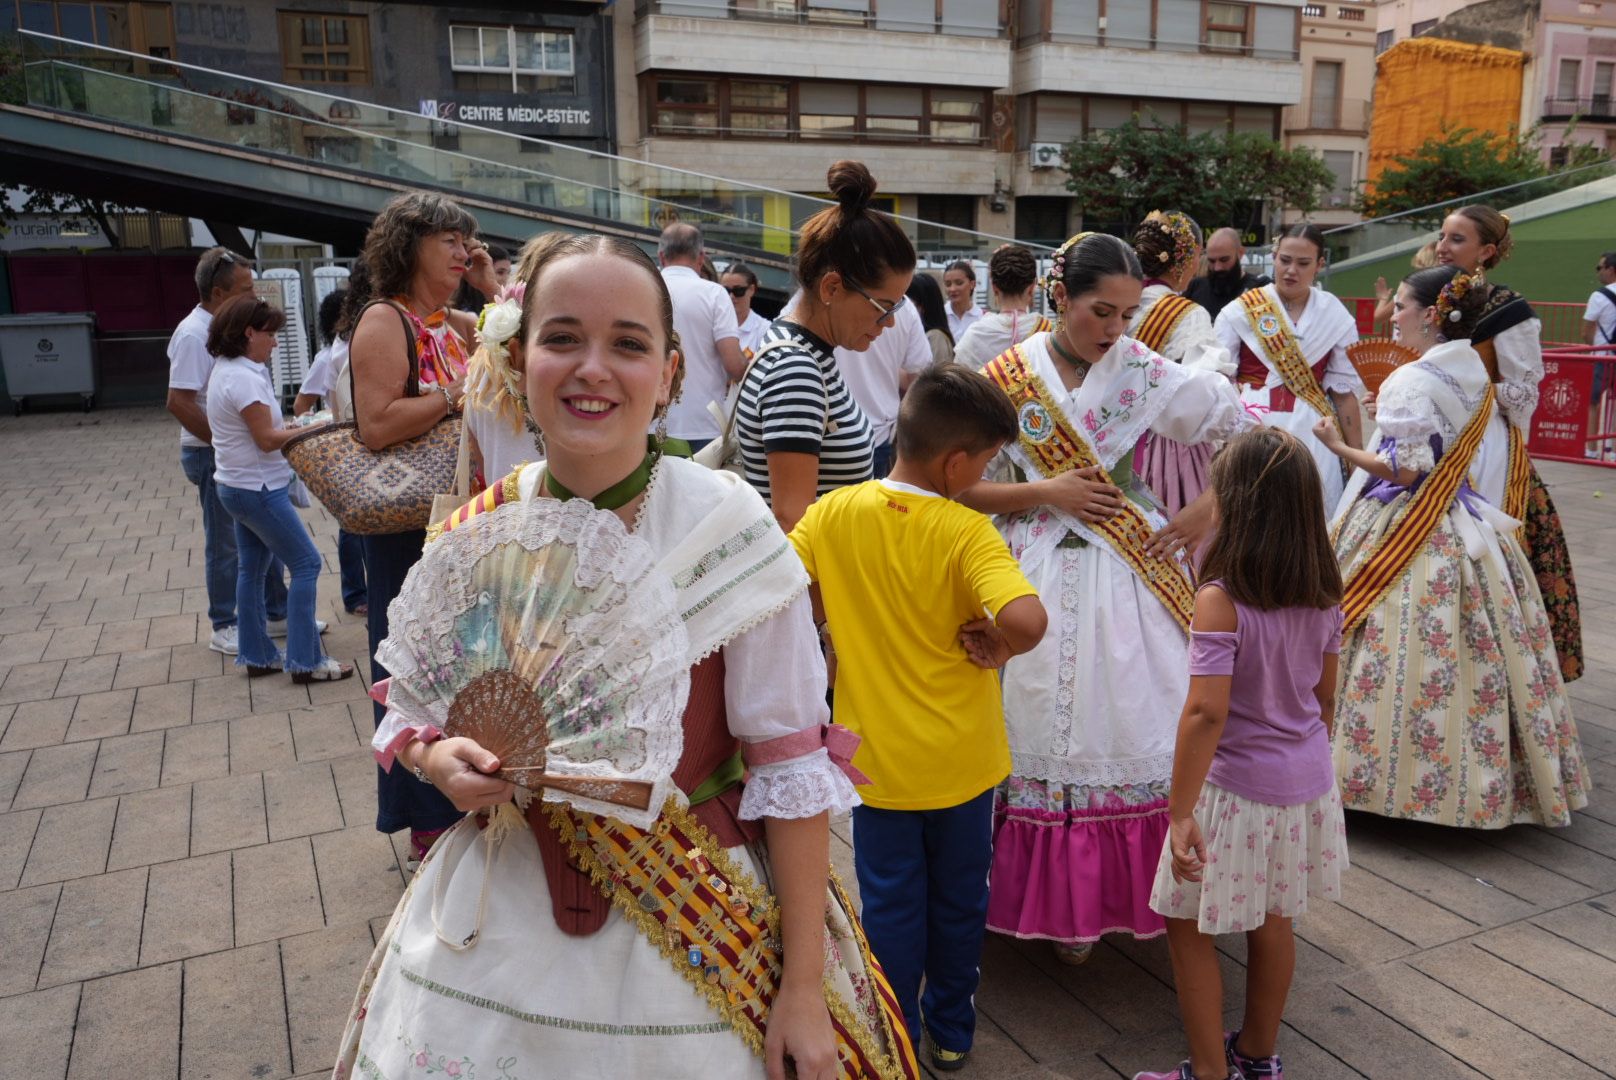 Vila-real inicia la mecha de de 10 días de fiesta con la Crida